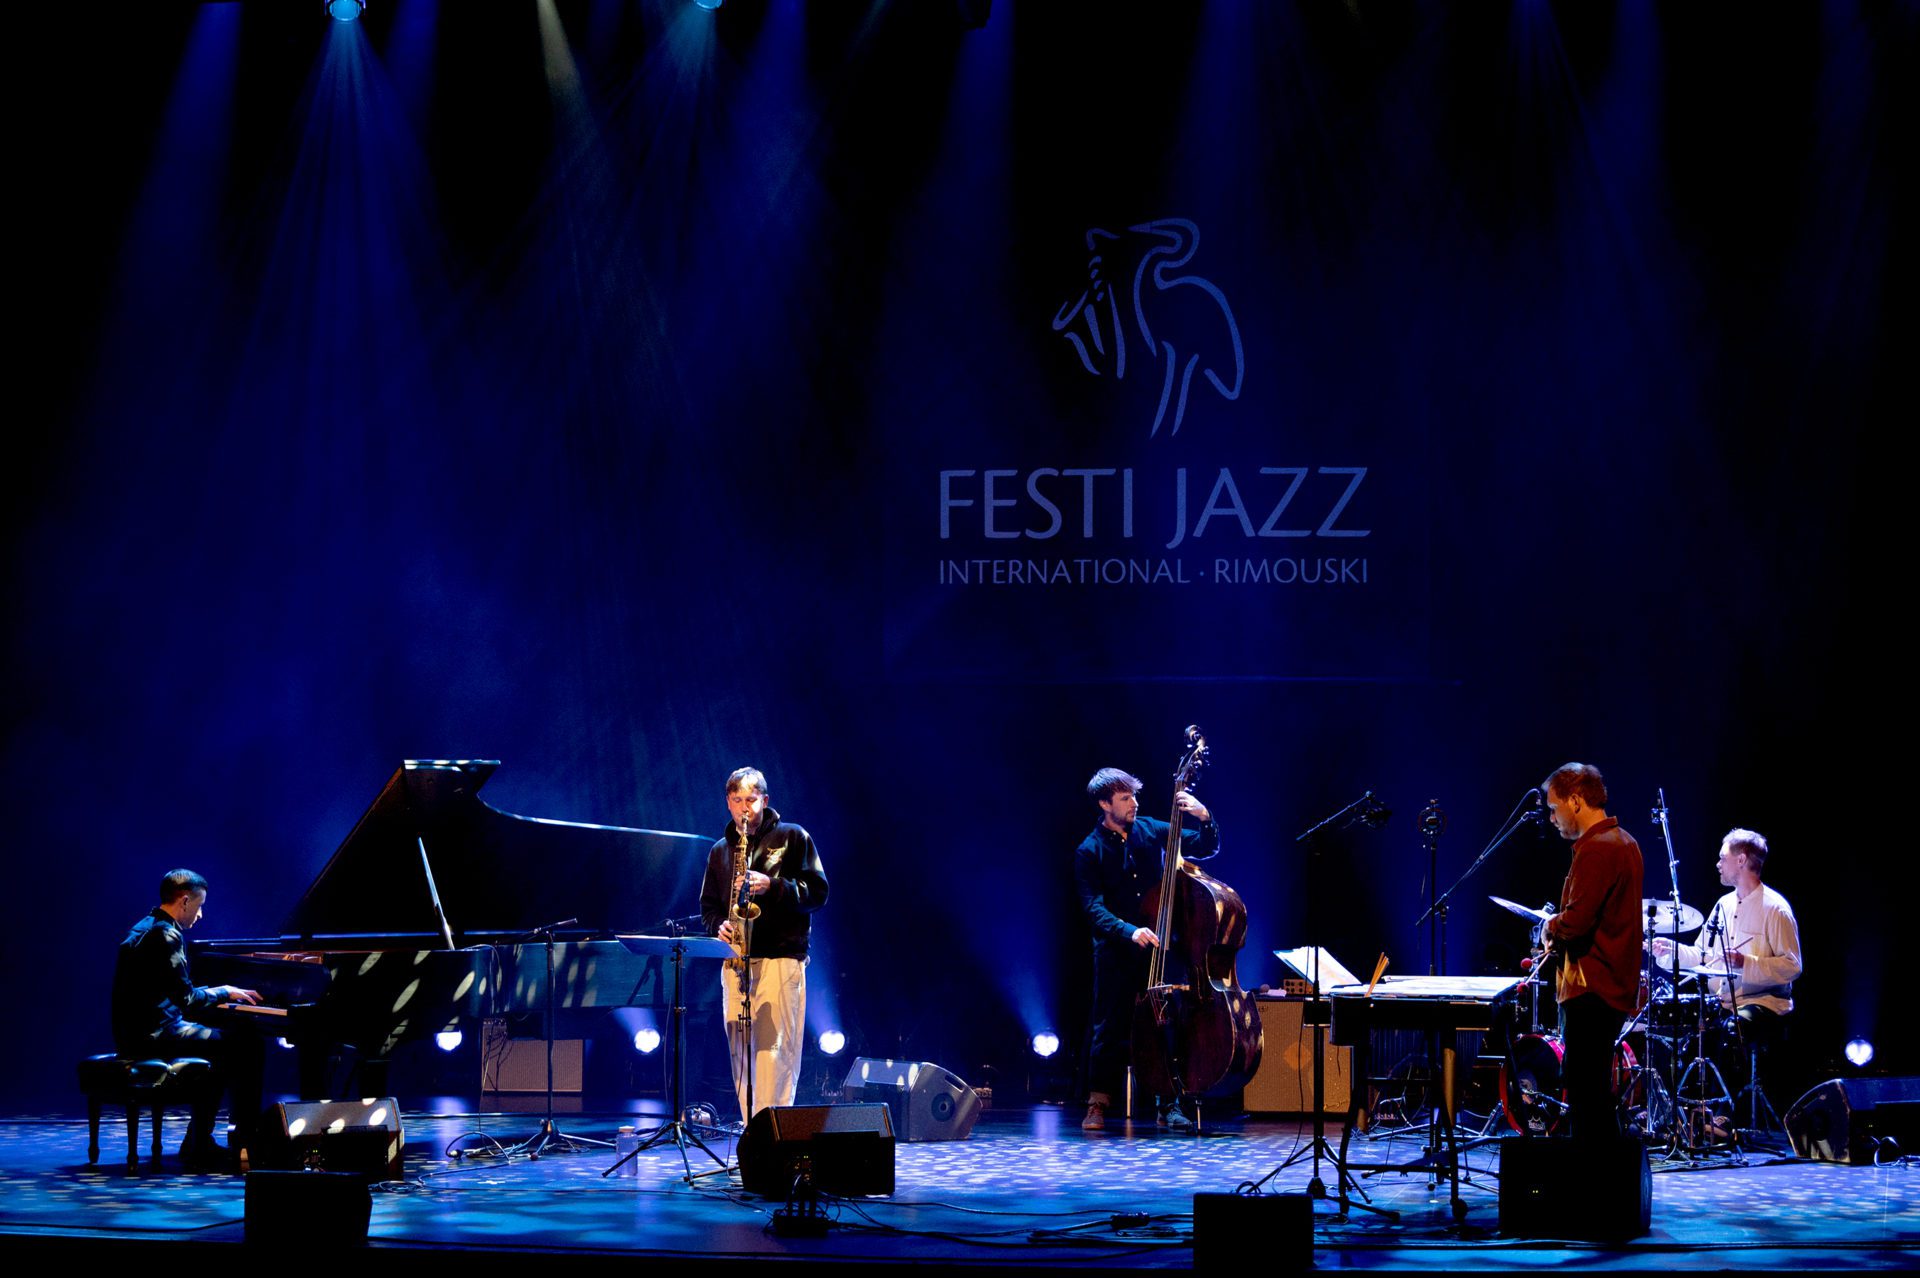 Background image of the Festi Jazz Rimouski